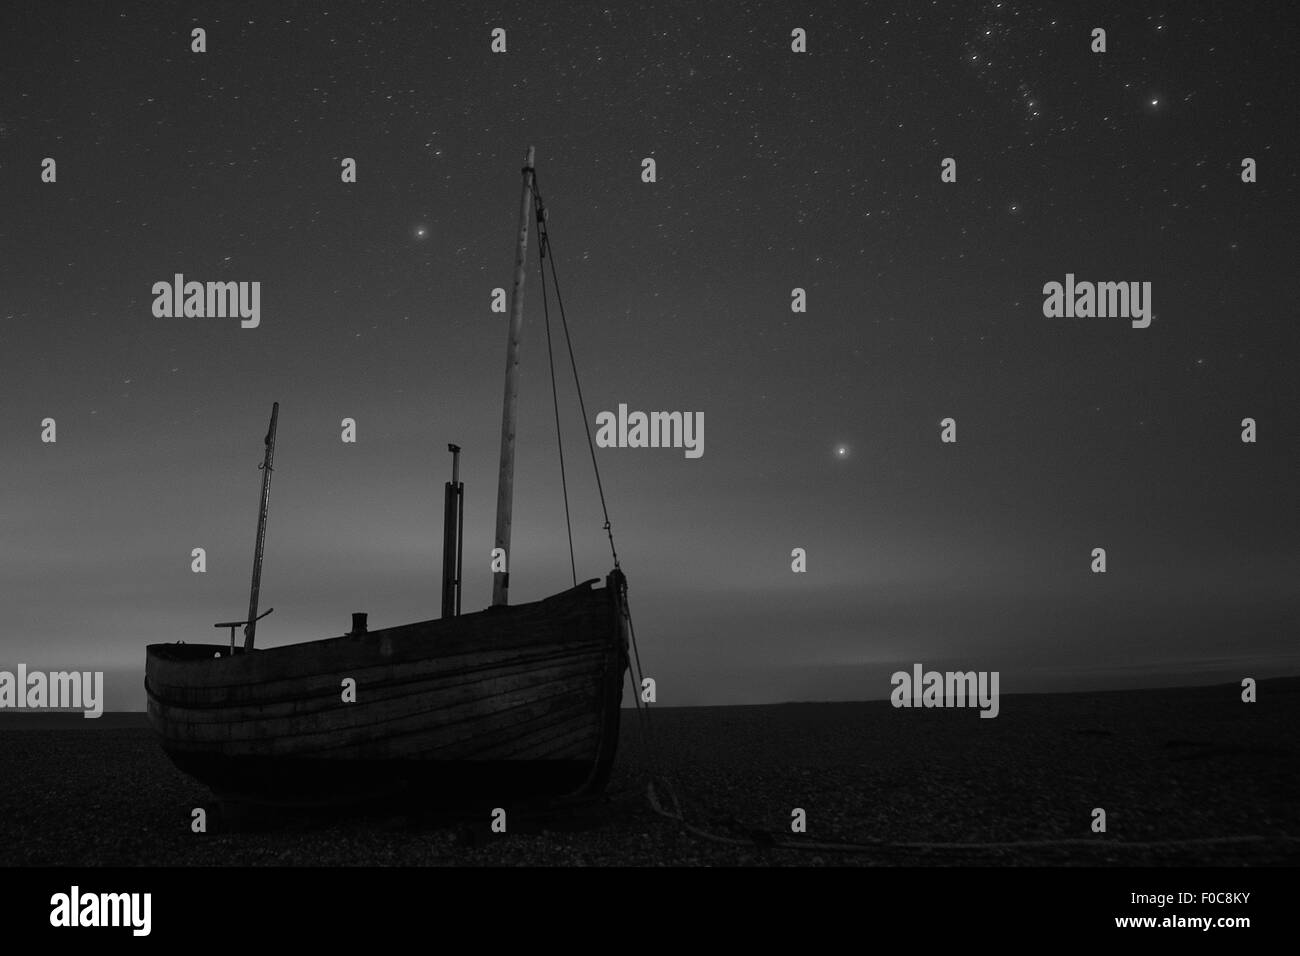 Un bateau en bois est visible sur la plage la nuit, sous une couverture d'étoiles, à Dungeness, dans le Kent, en Angleterre, en noir et blanc. Banque D'Images